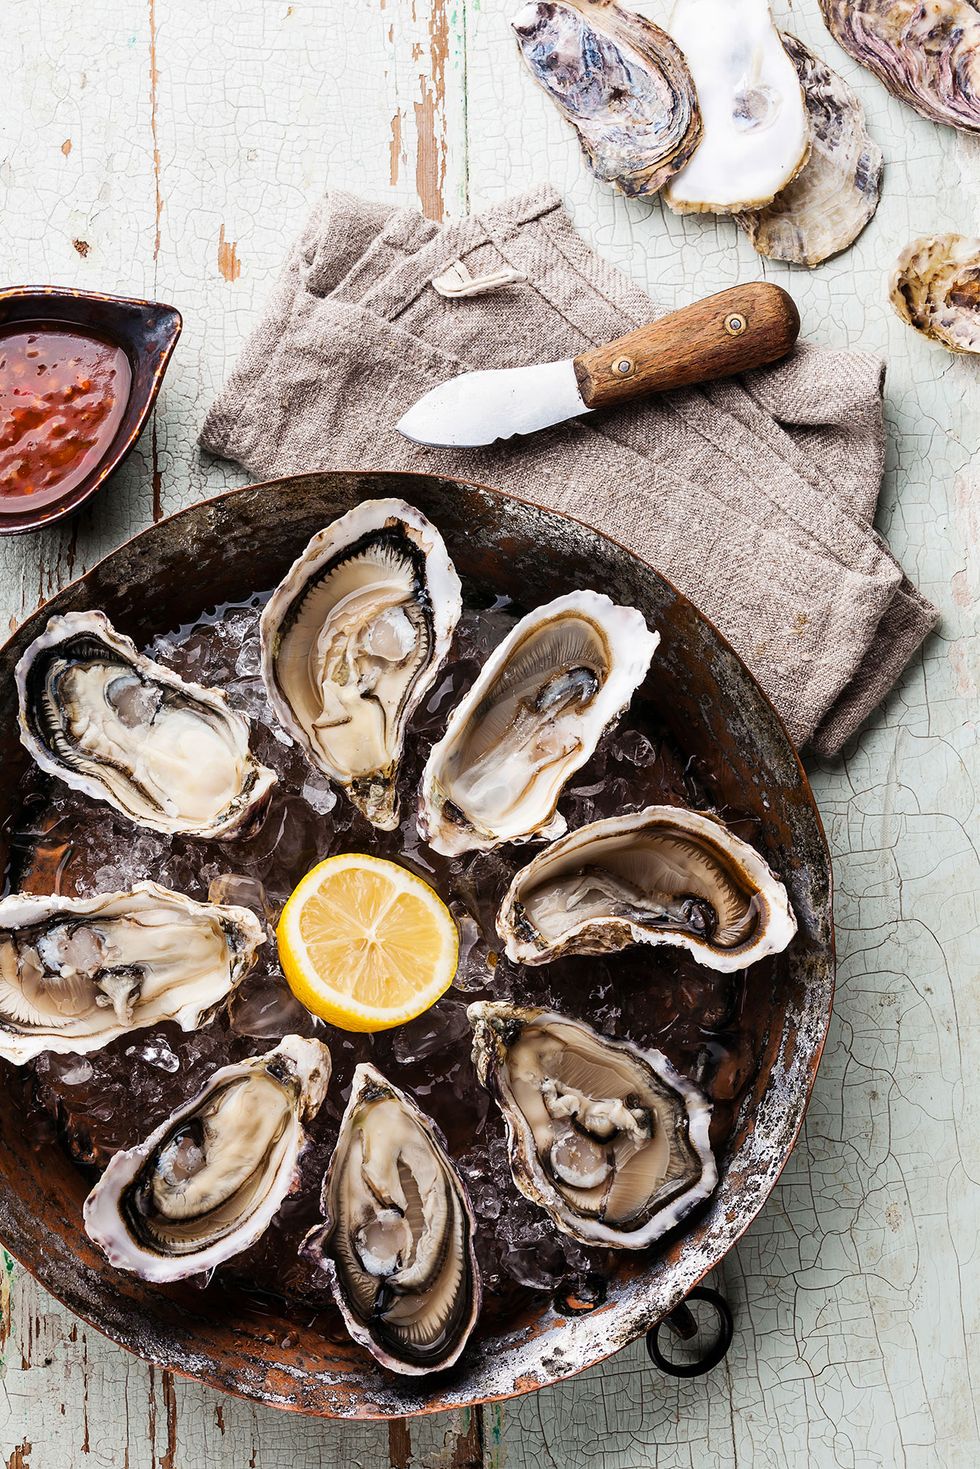 los mejores restaurantes de la costa vasca donde comer ostras